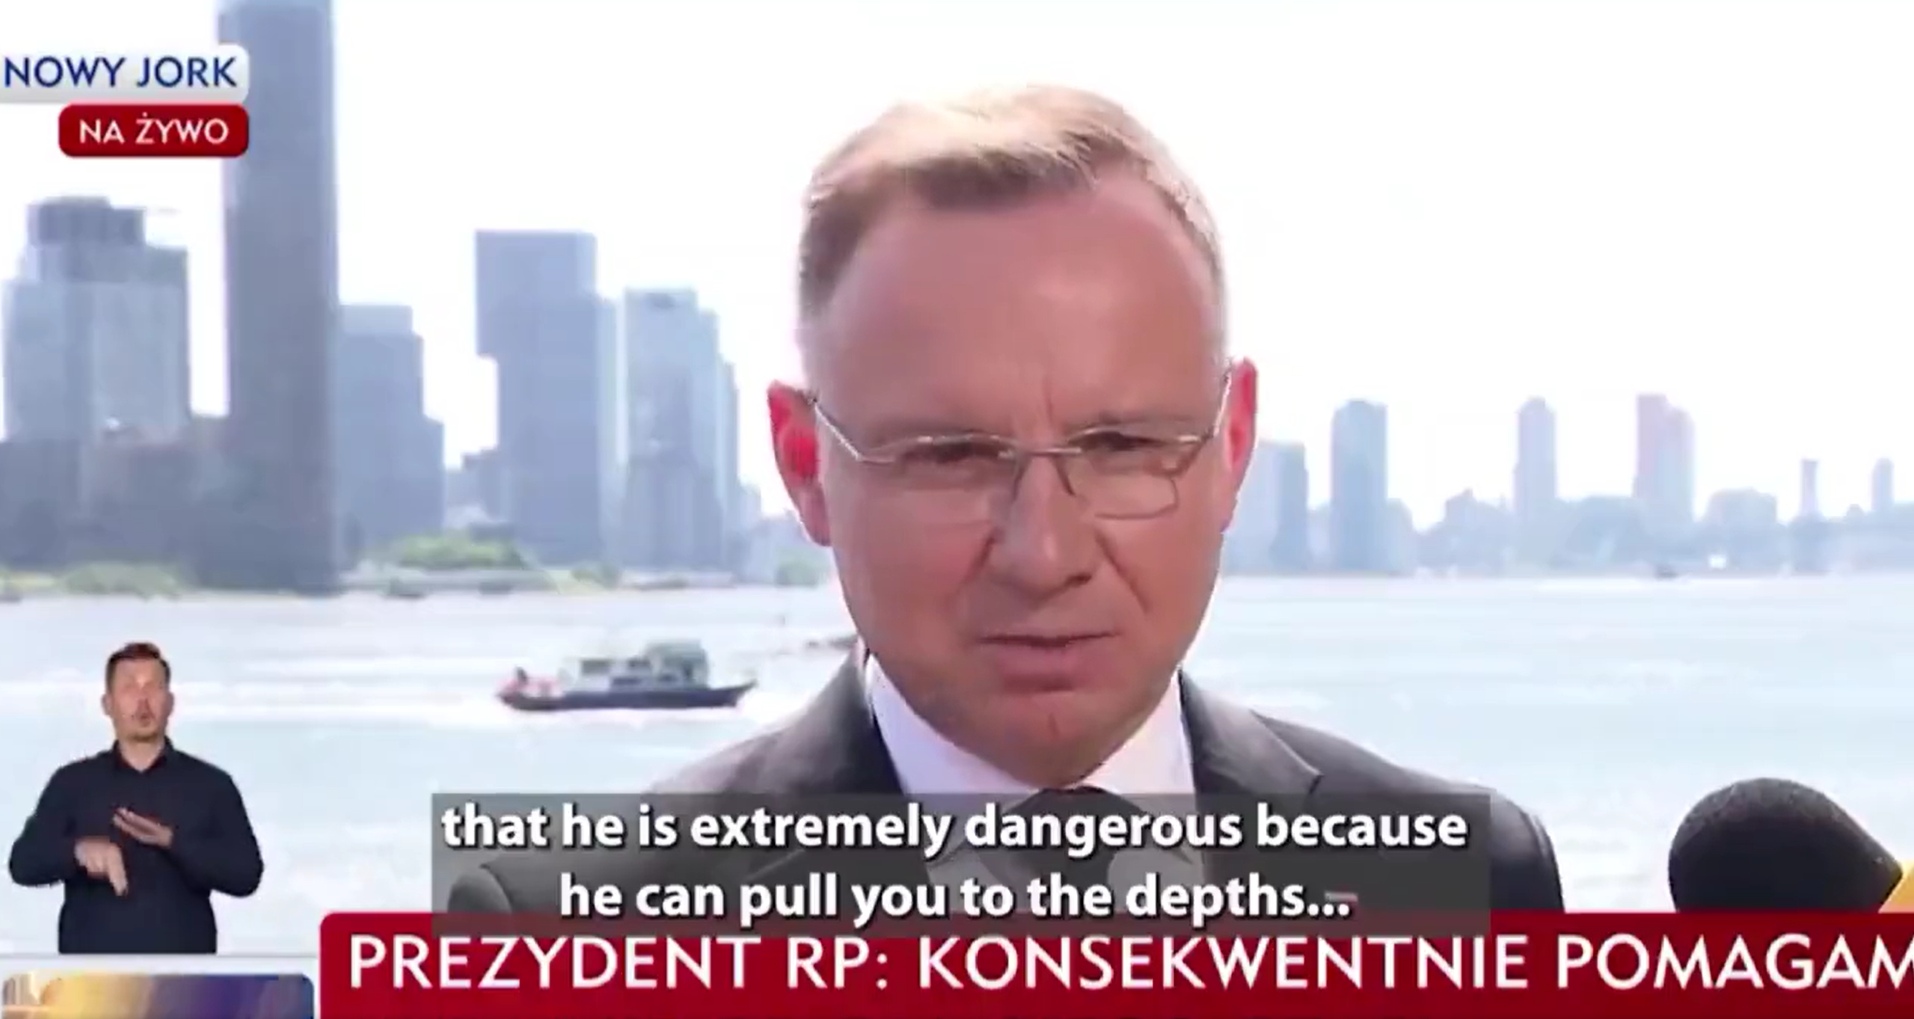  안제이 두다 폴란드 대통령의 TVN24 방송 인터뷰 화면  갈무리. 